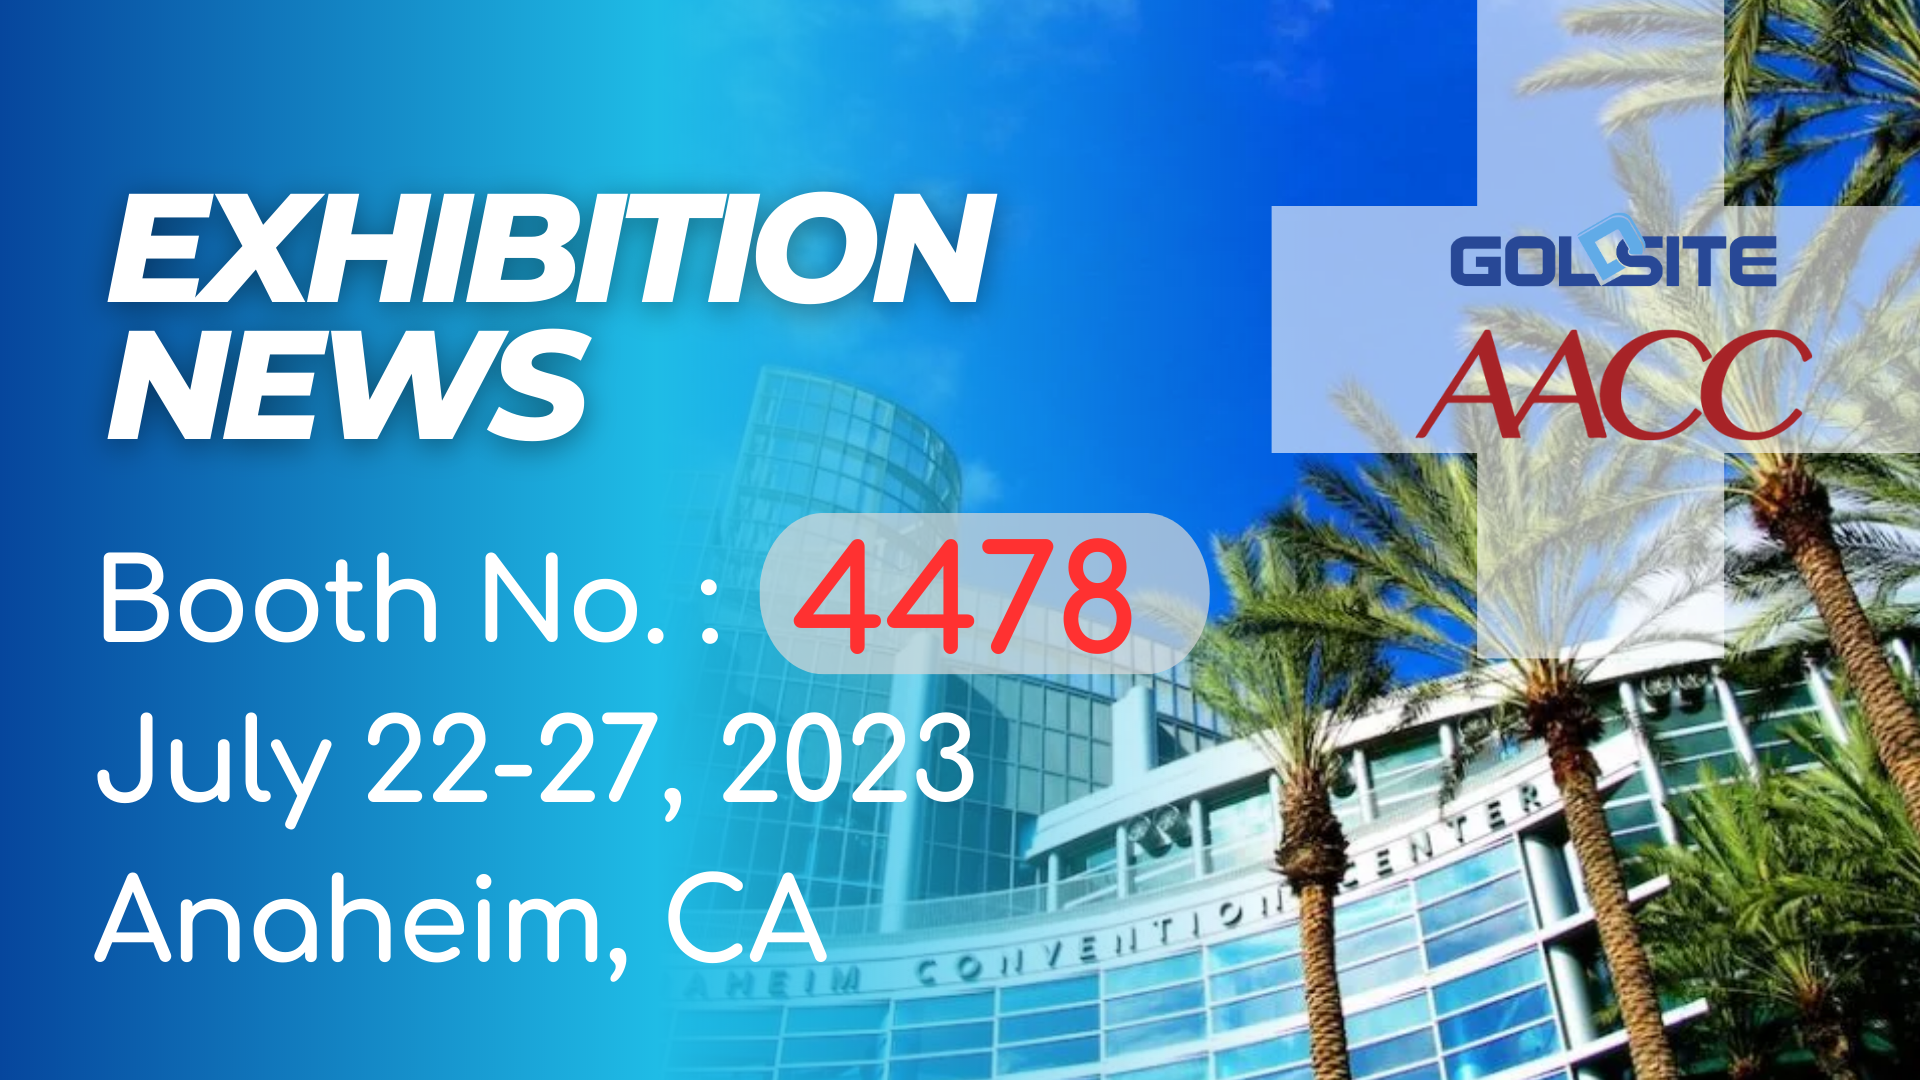 Événements à venir: Goldsite à exposer à AACC 2023 en Californie!